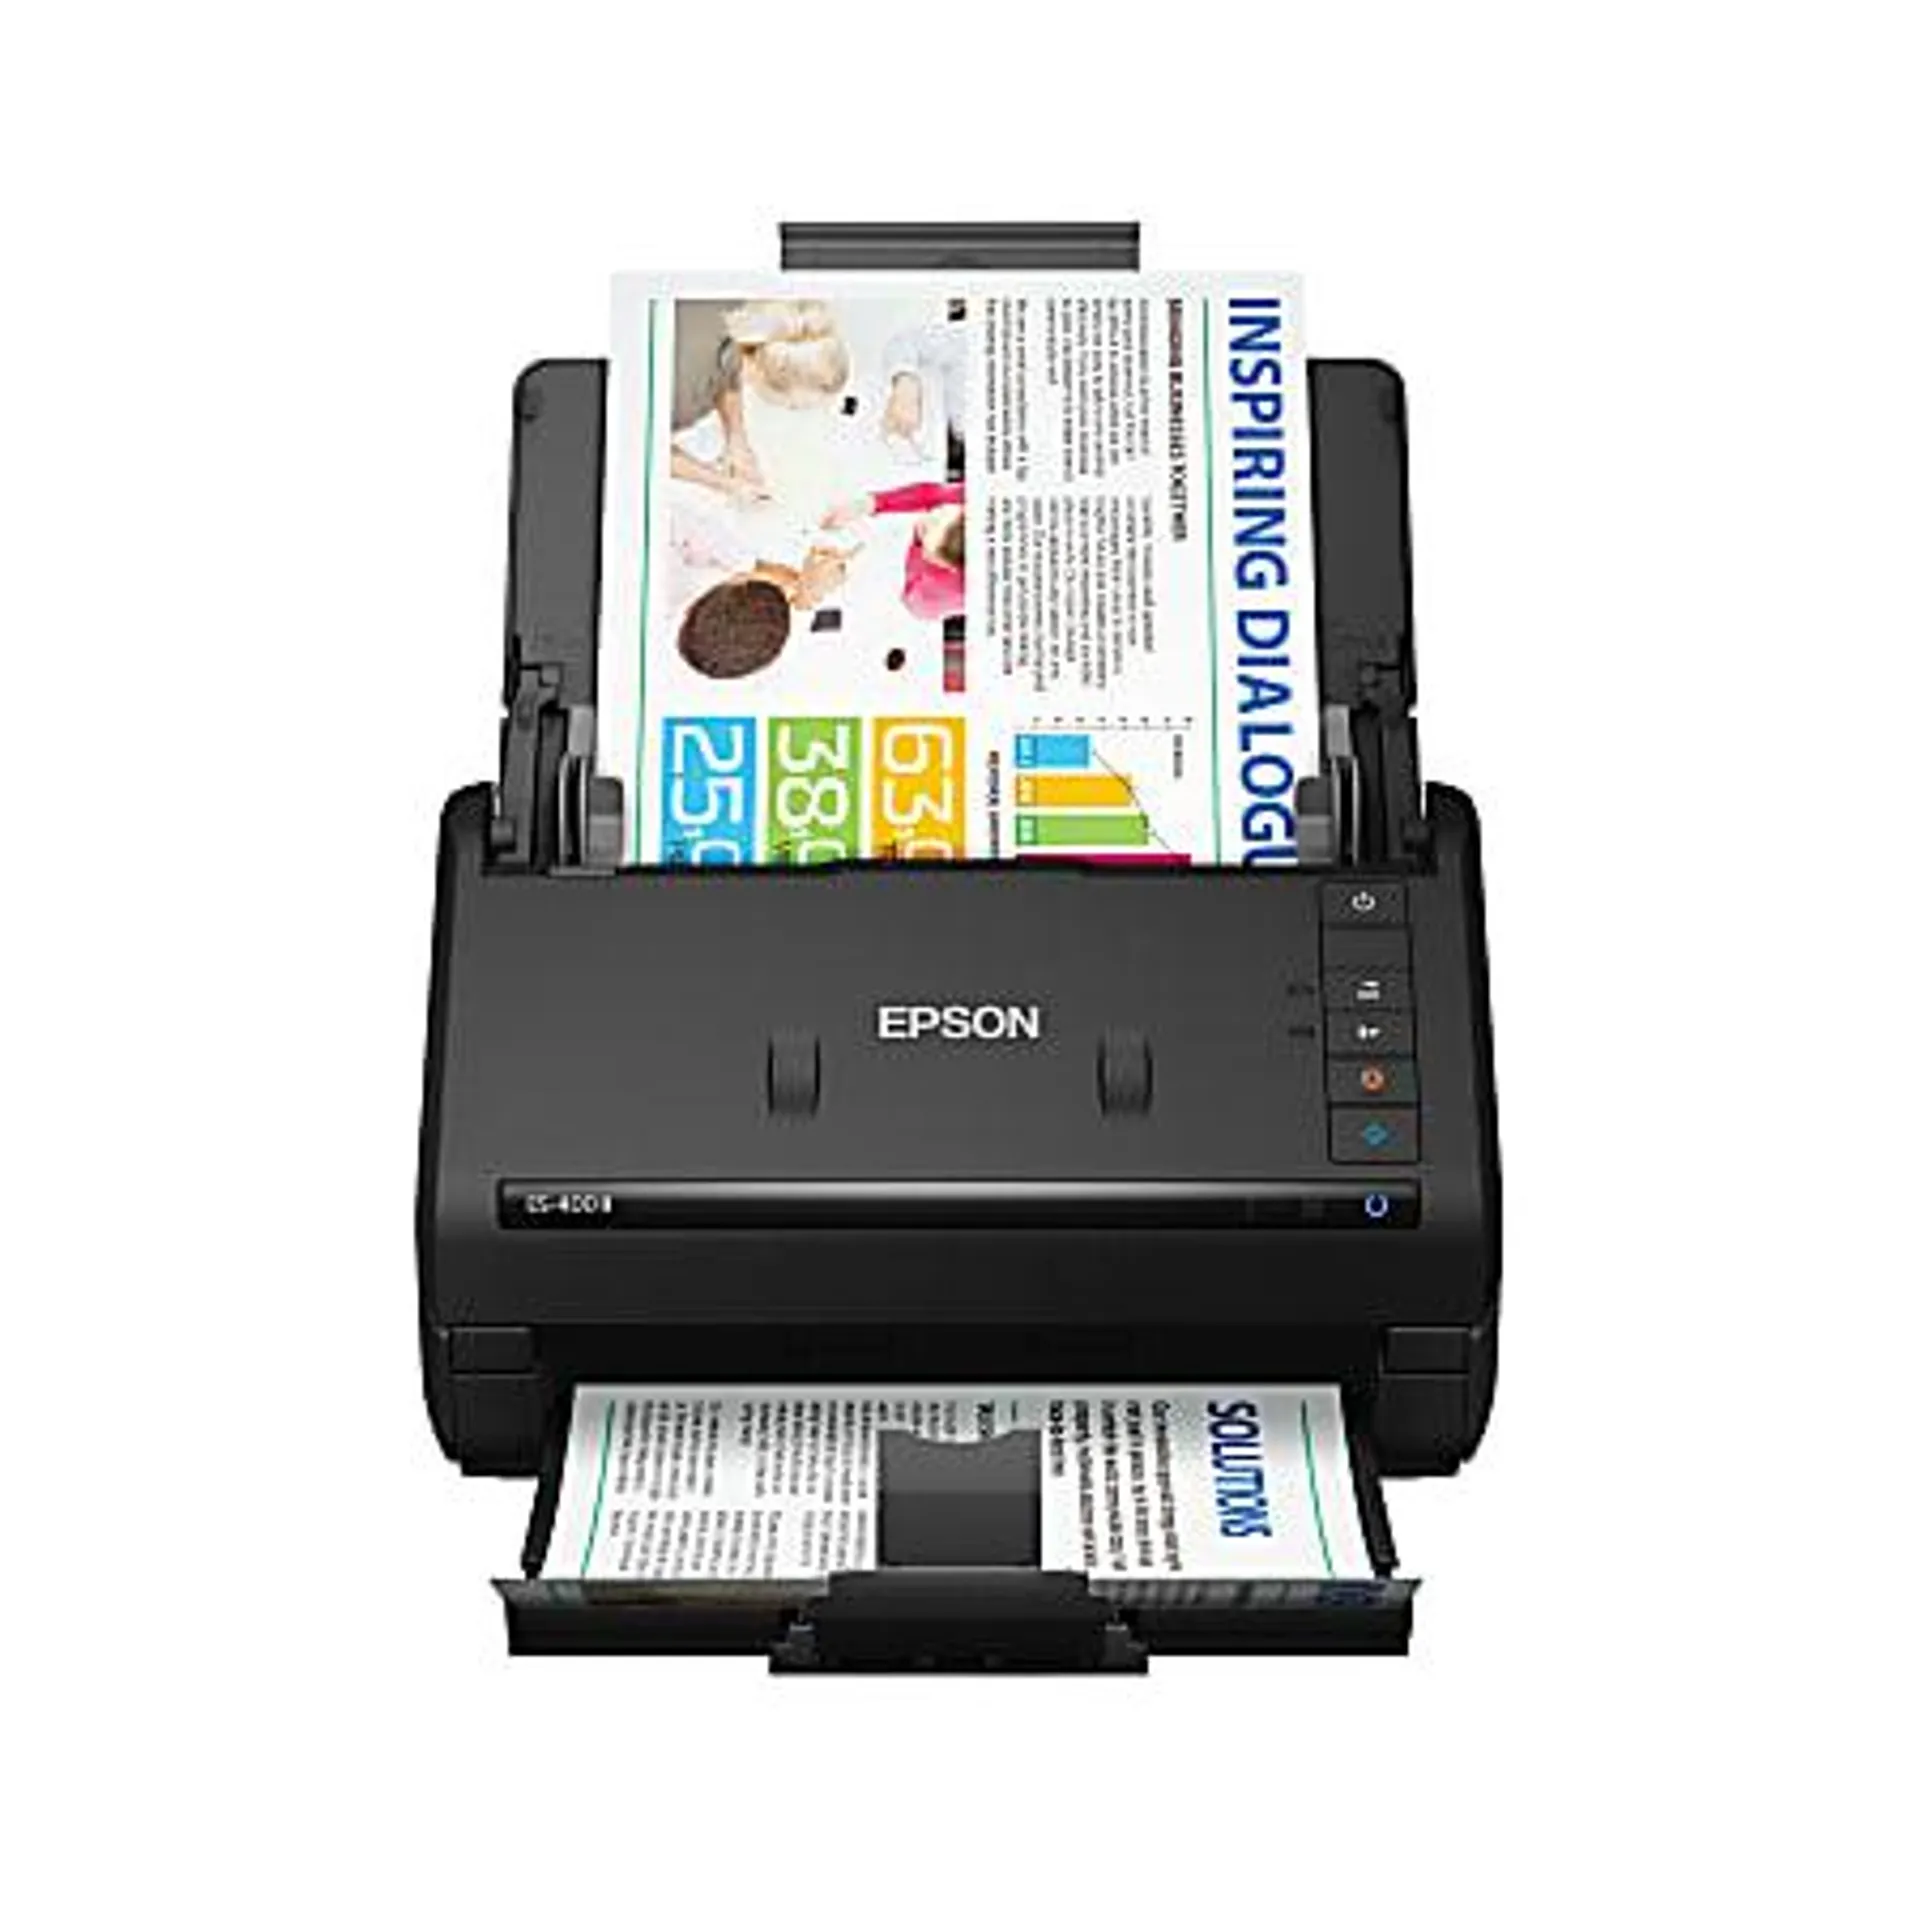 Epson® WorkForce® ES-400 II Duplex Desktop Color Document Scanner with Auto Document Feeder